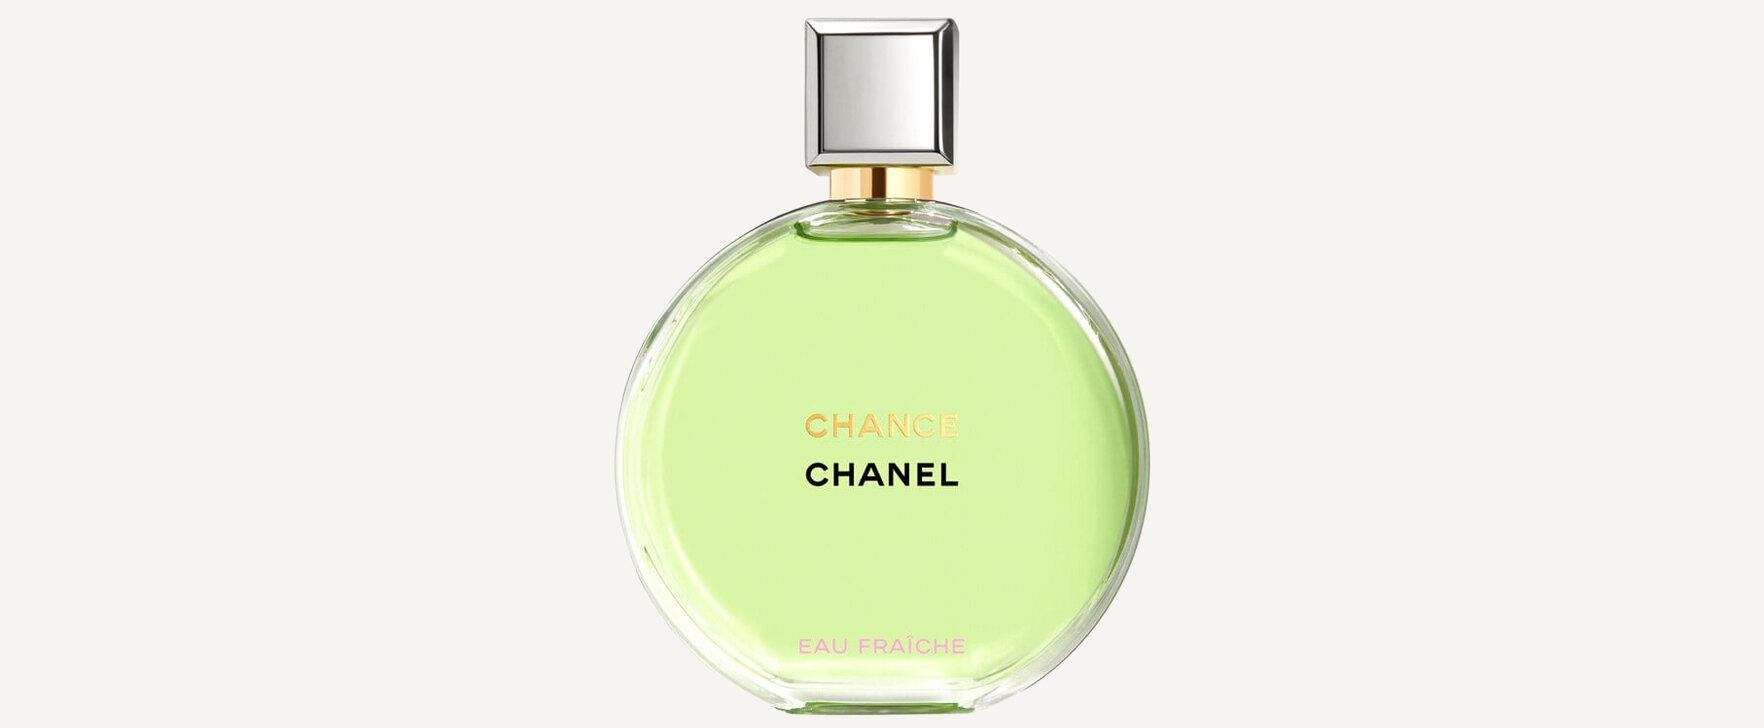 Chance Eau Fraîche (Eau de Parfum): Chanel's Popular Women's